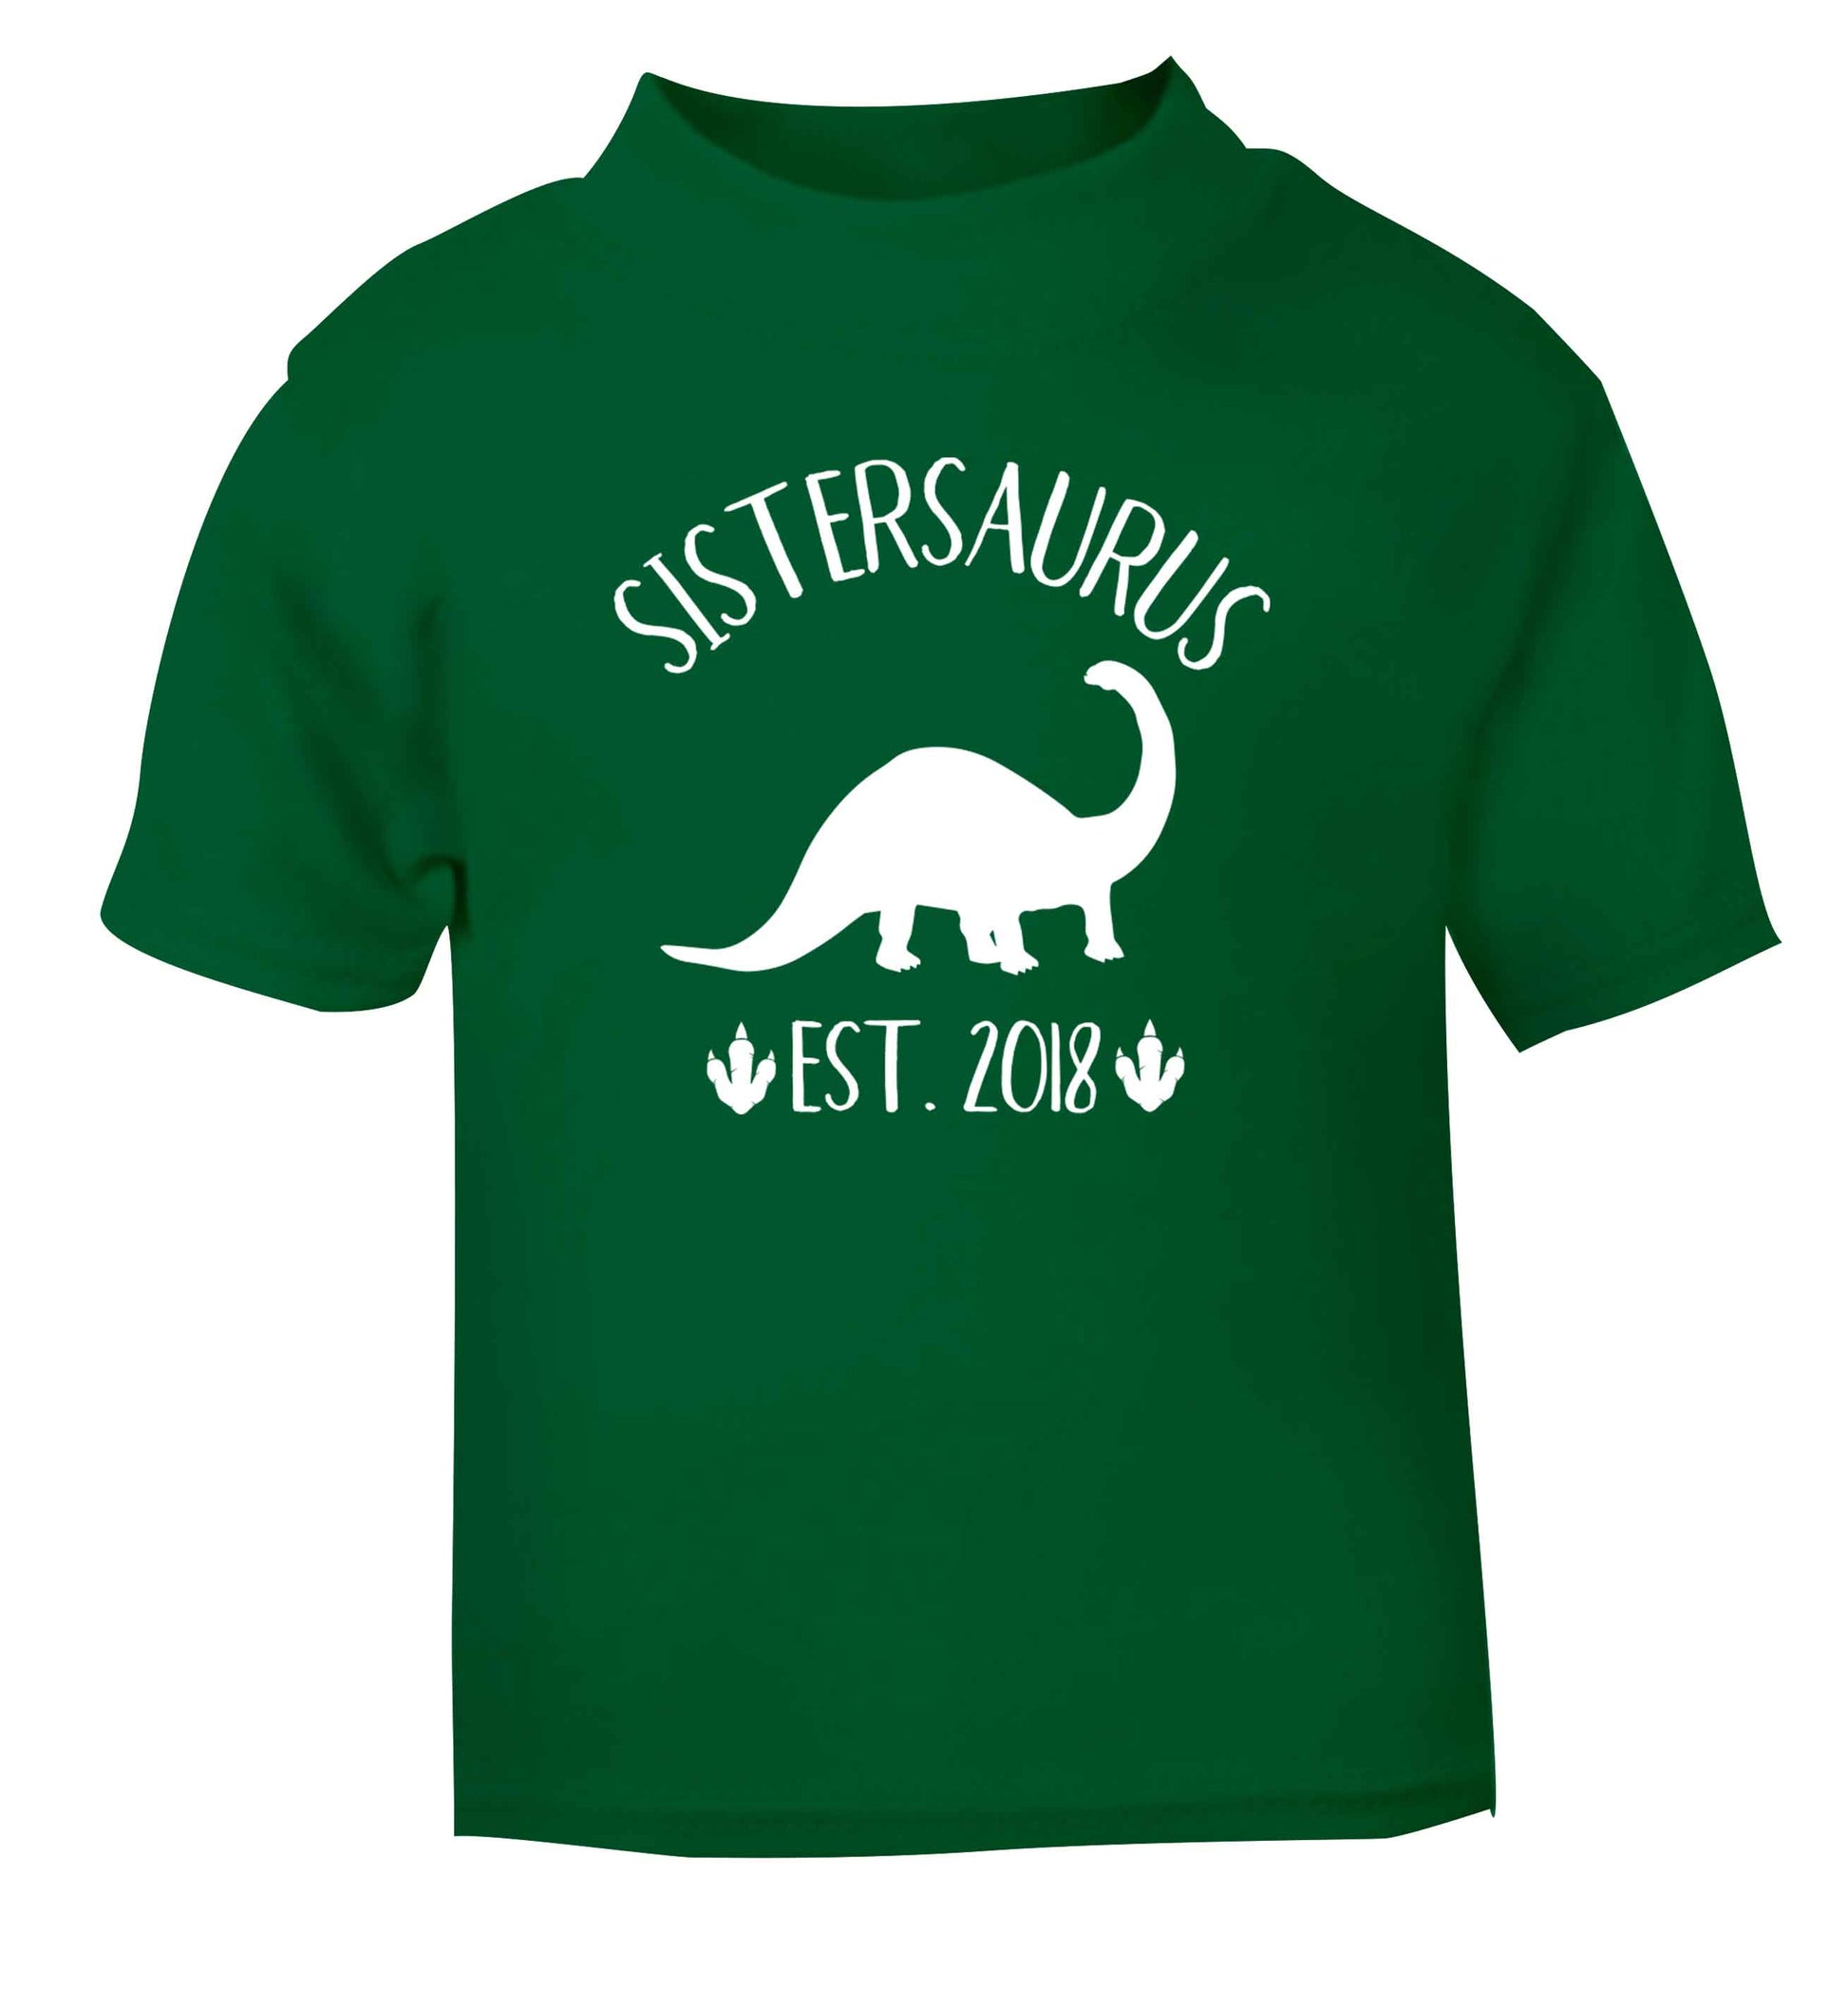 Personalised sistersaurus since (custom date) green Baby Toddler Tshirt 2 Years